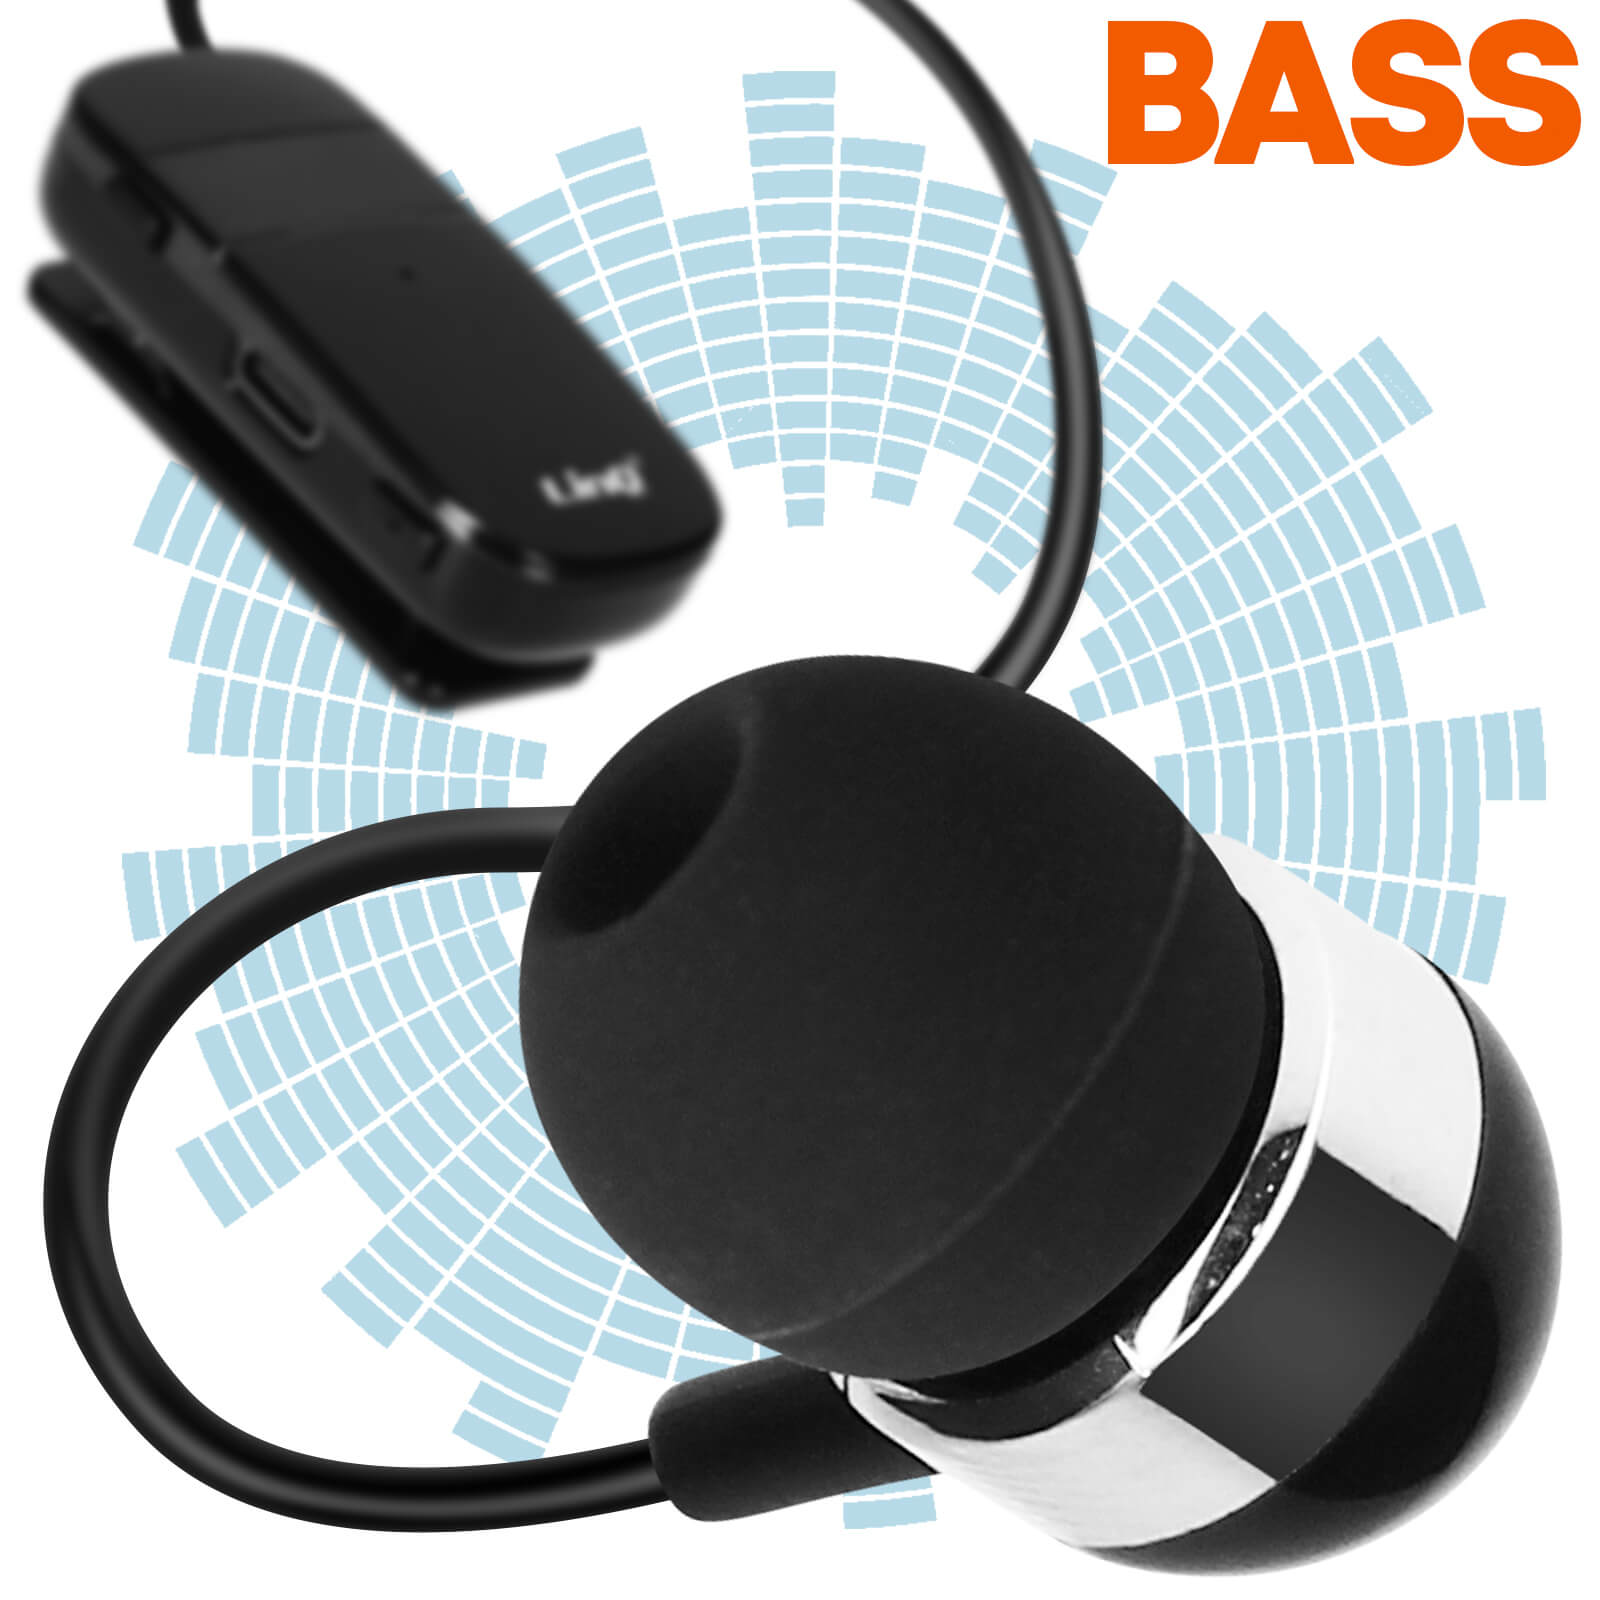 Accessoires pour oreillette Bluetooth Microphone pour oreillette